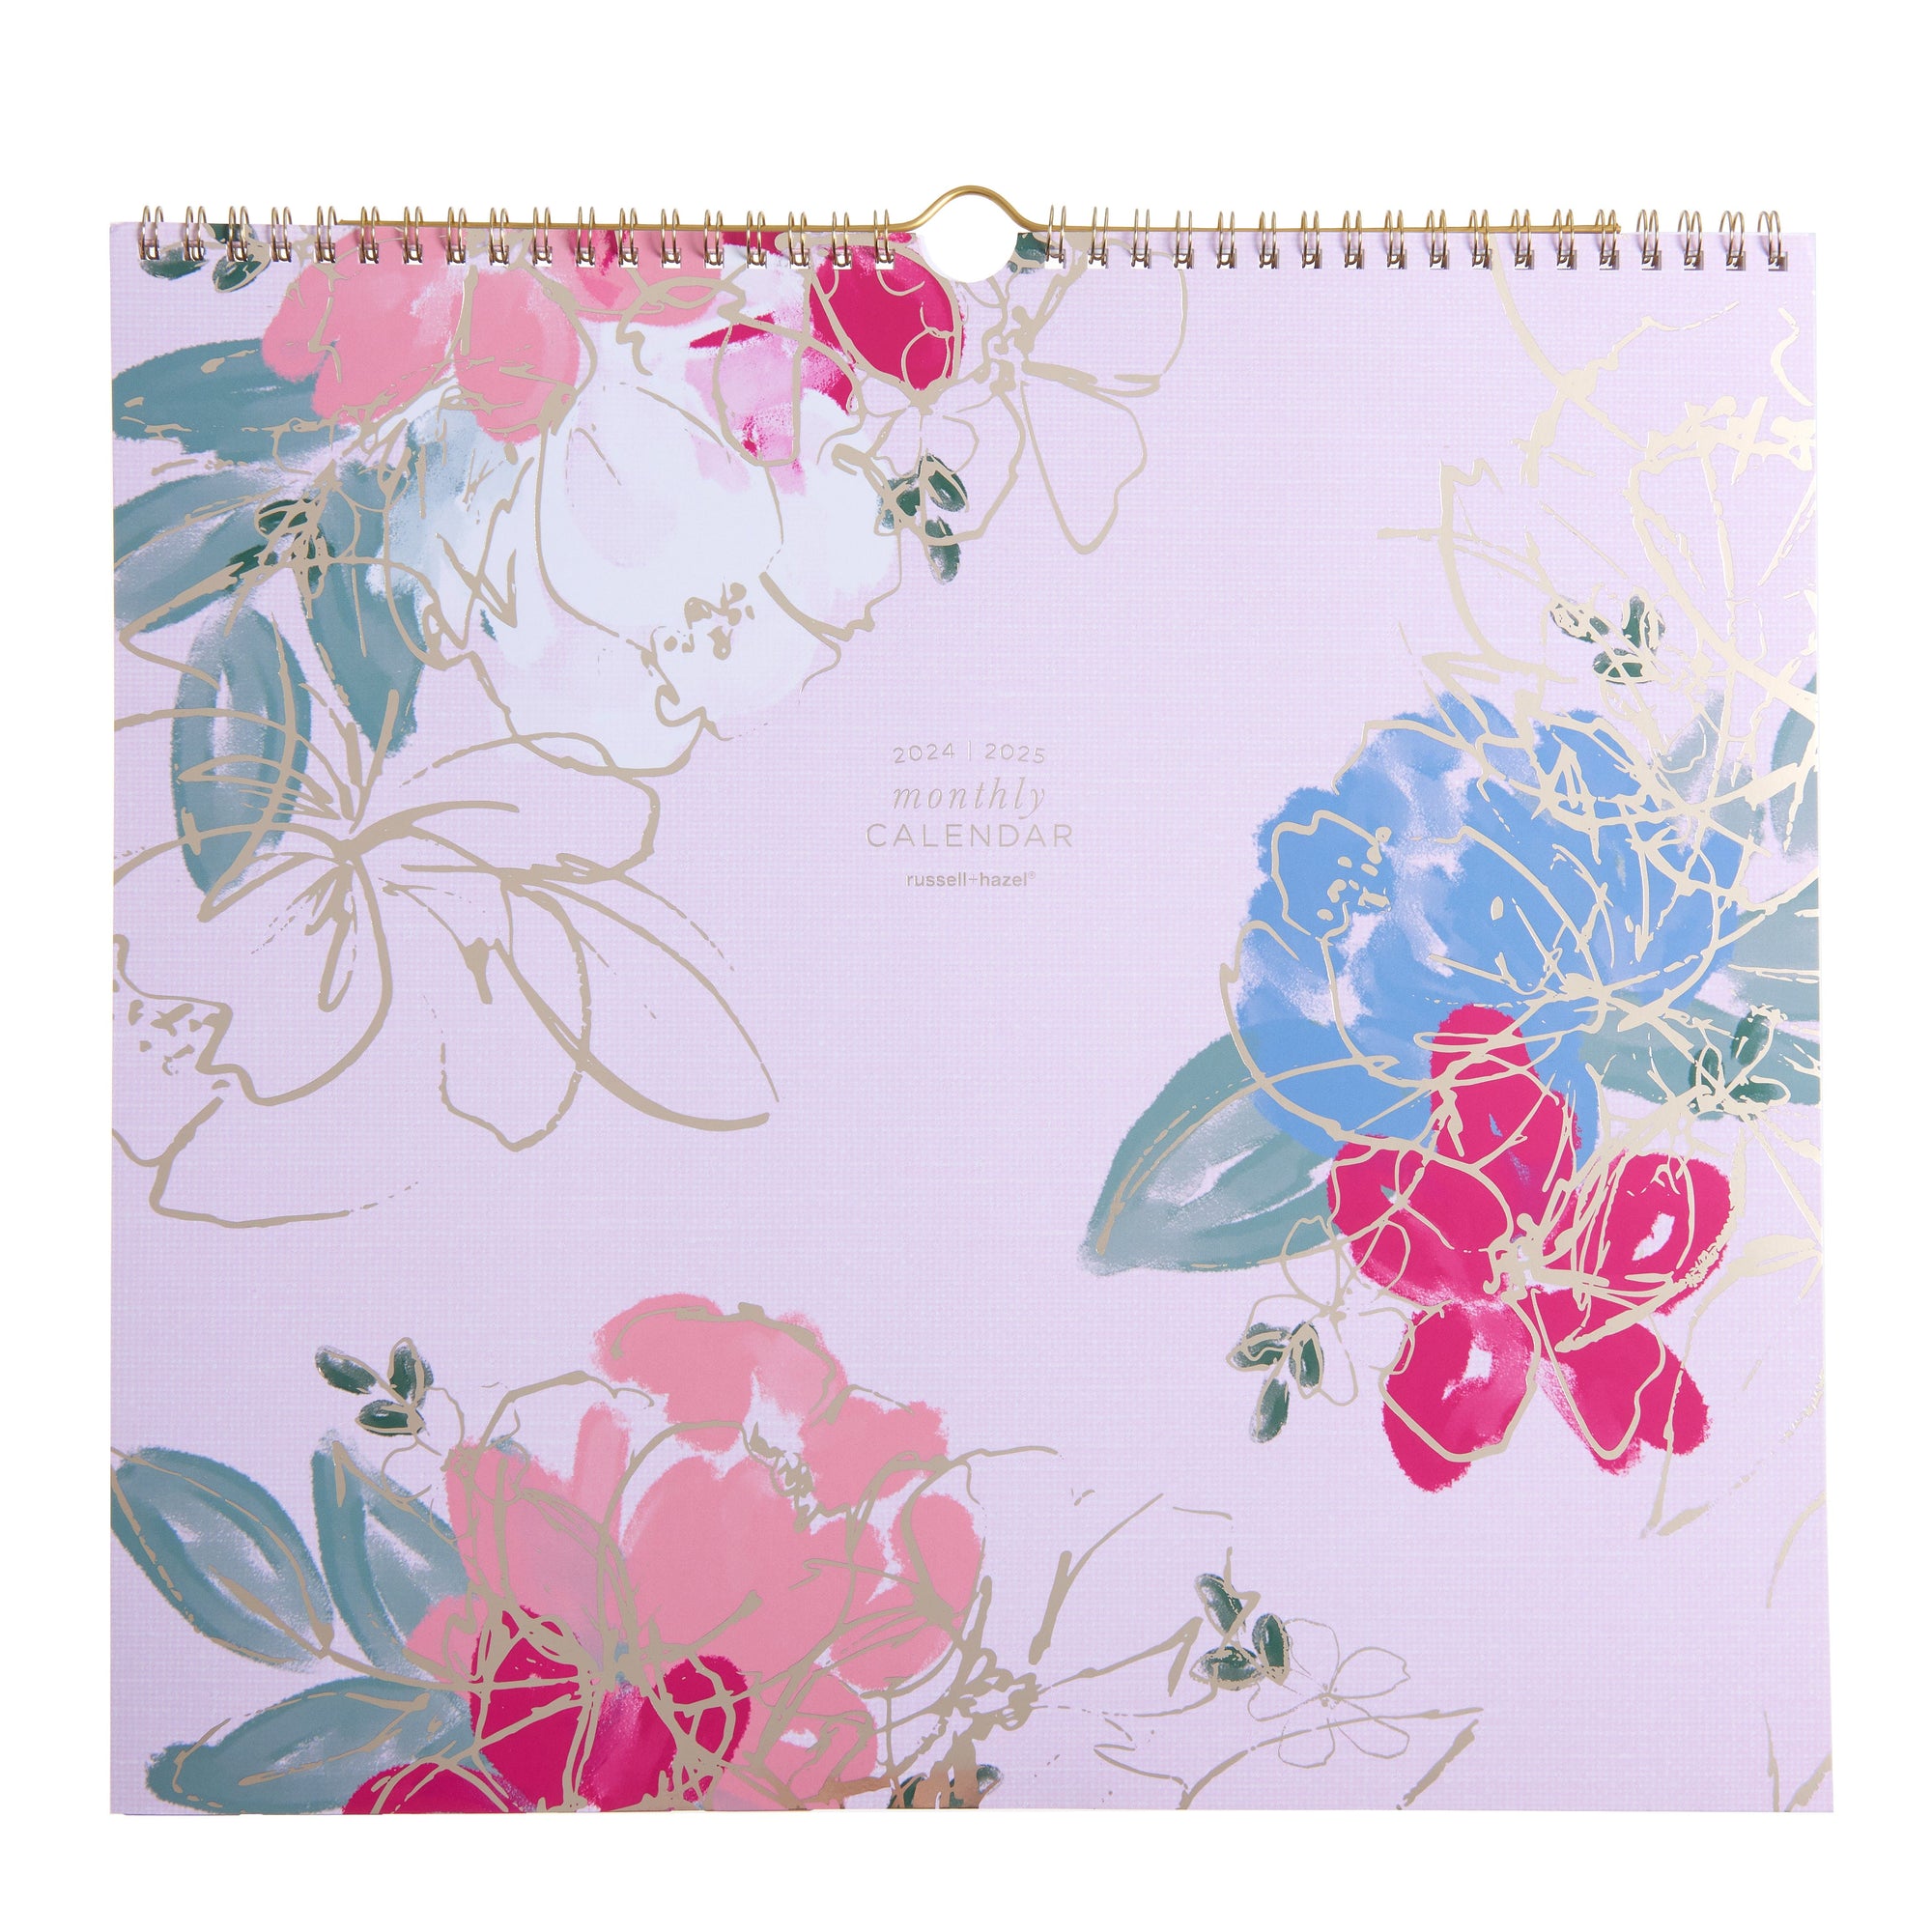 Blush Floral - 2024-2025 Wall Calendar 50145 russell+hazel Calendar